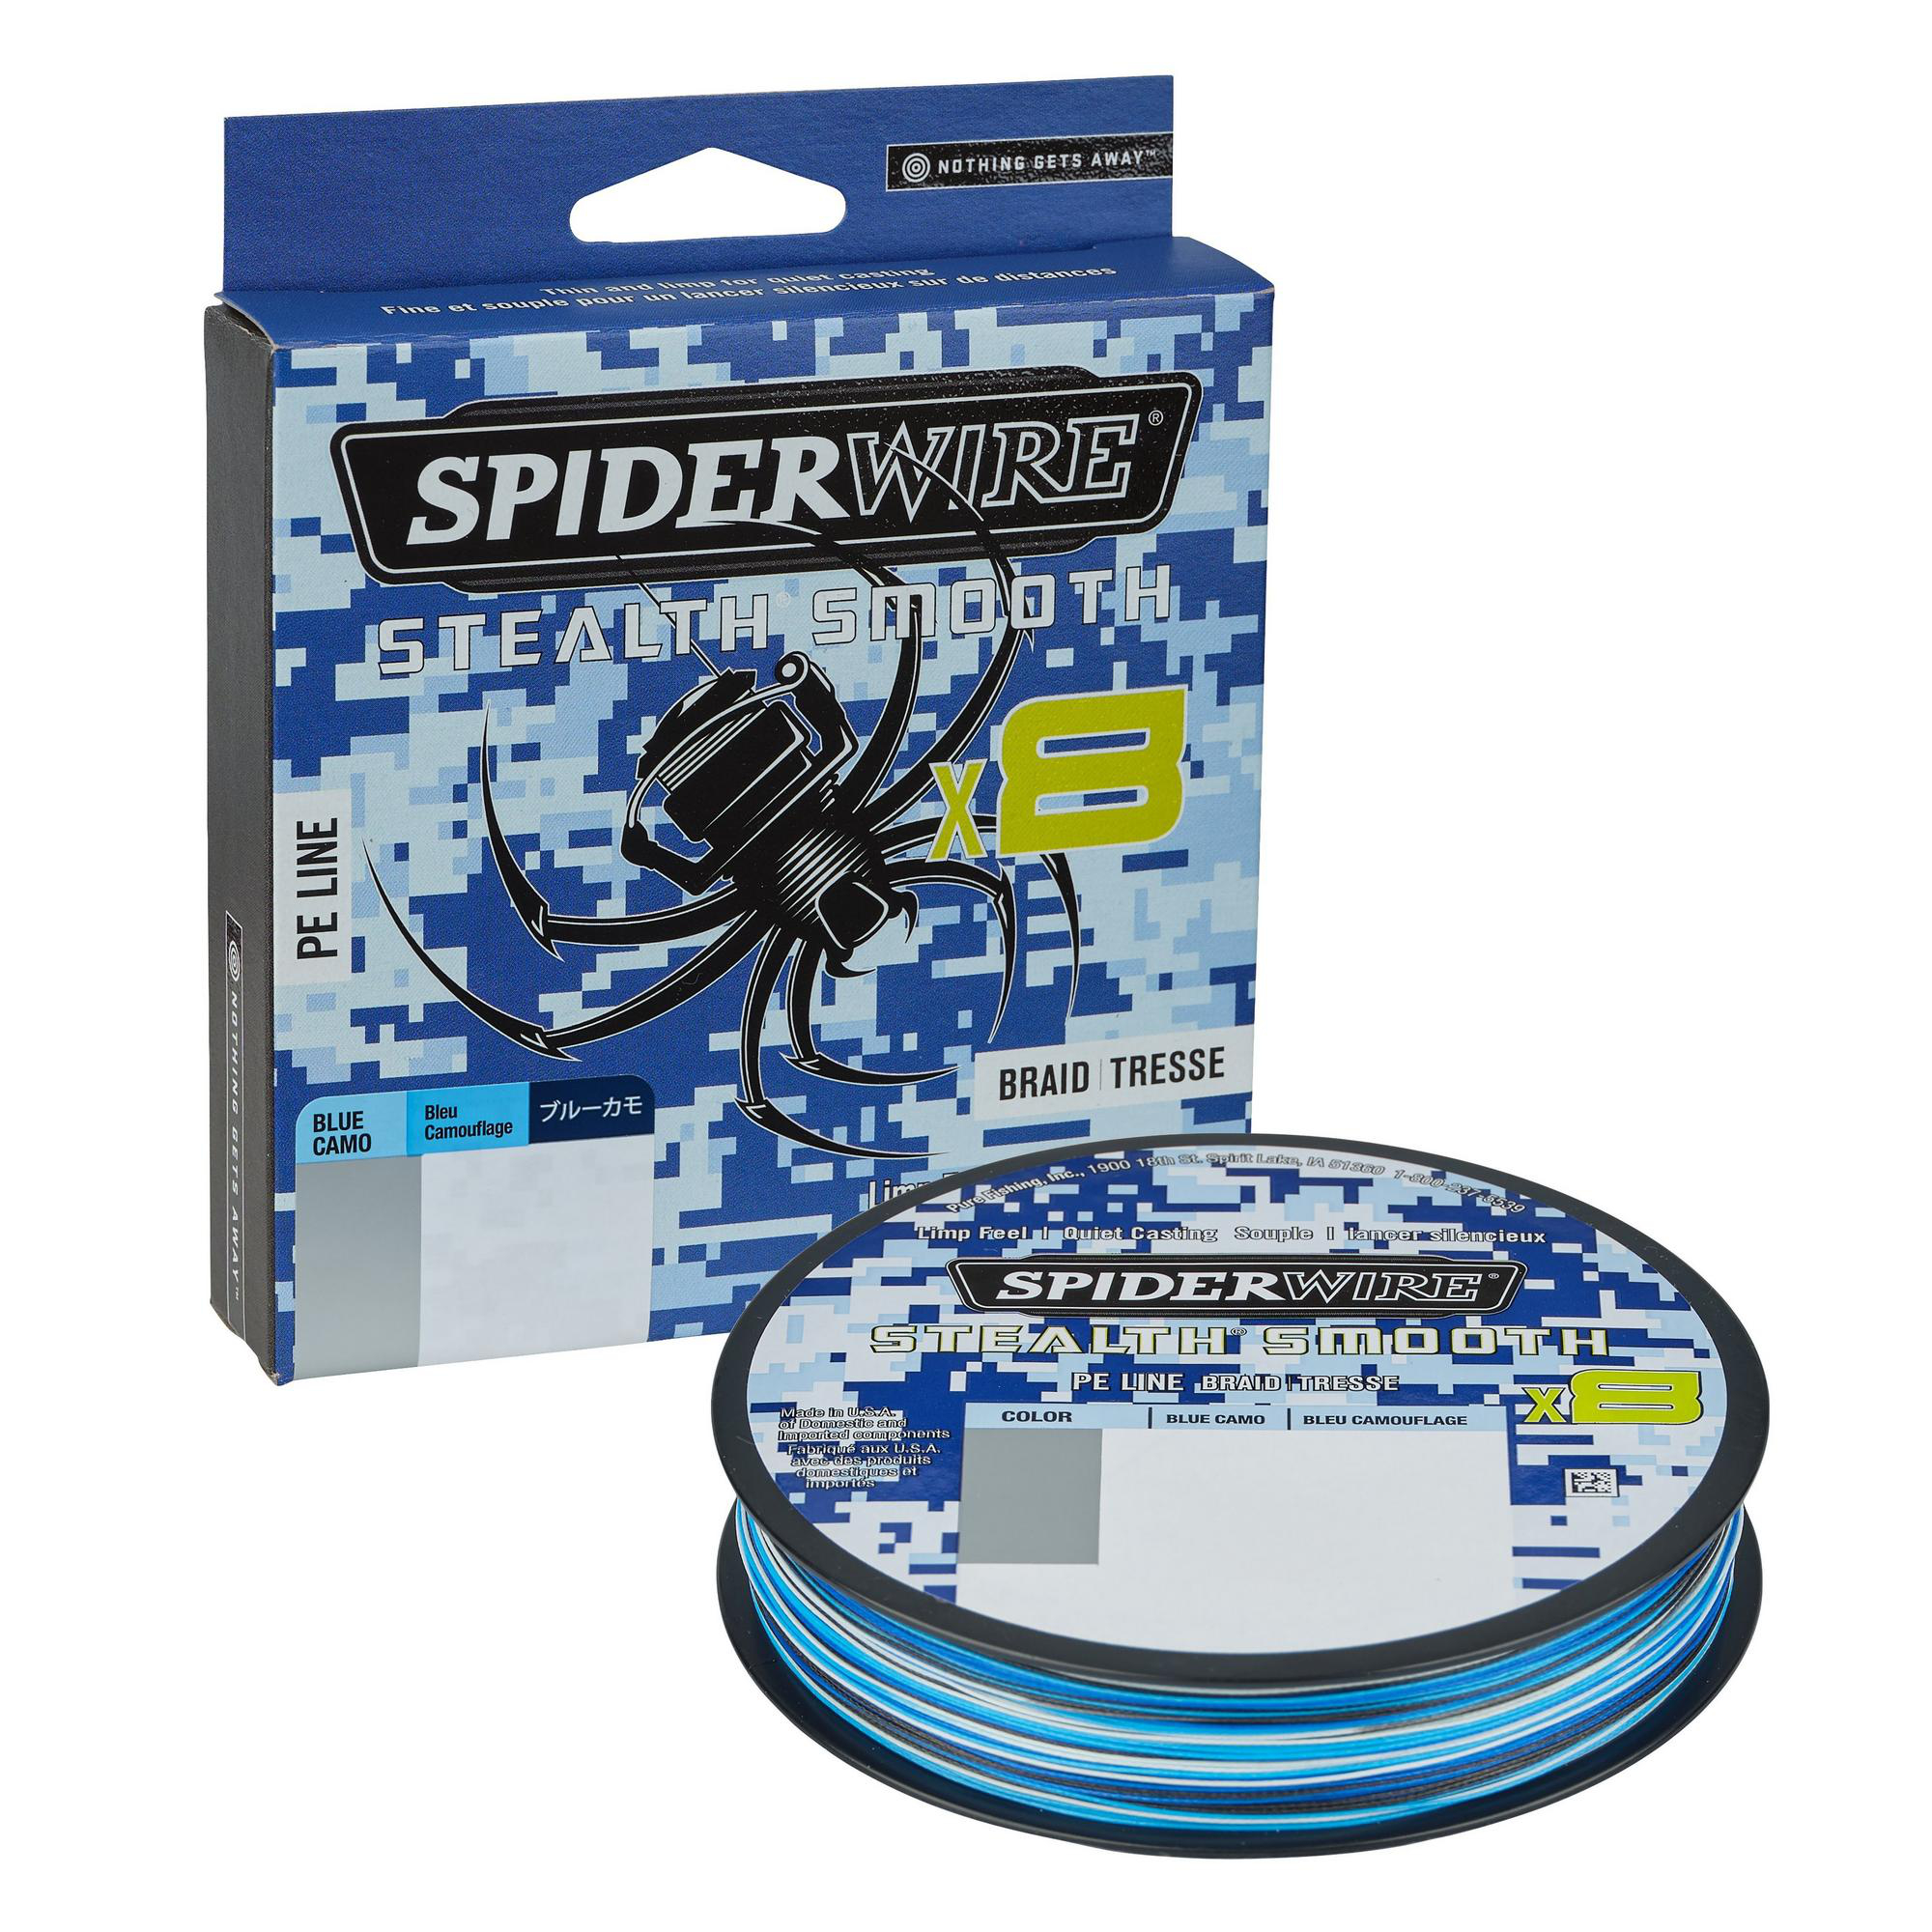 Spiderwire Stealth Smooth8 X8 PE Braid Trecciato 8 Capi 150mt Blue Camo, Acquista Online